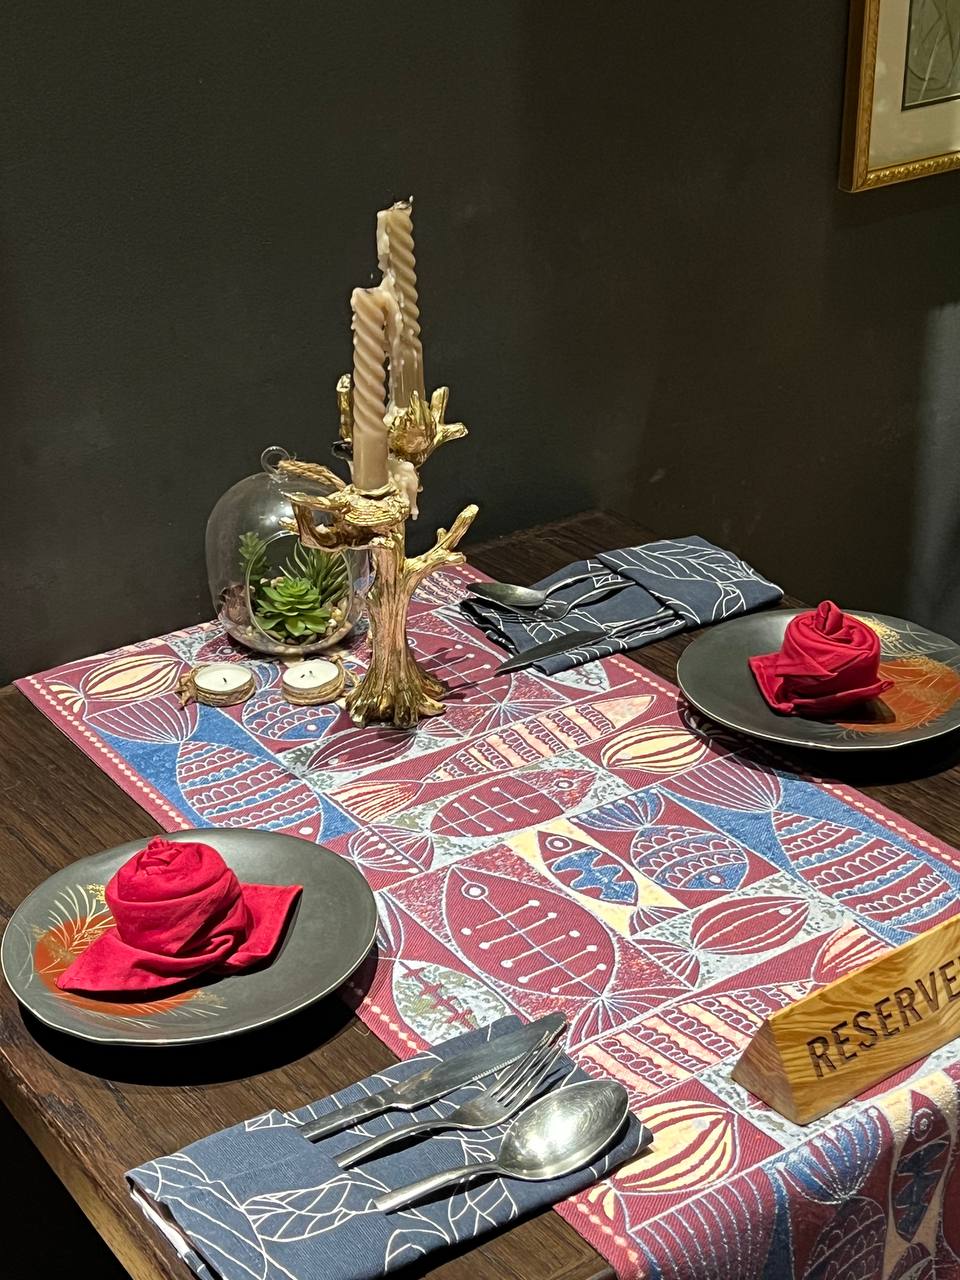 Trang trí bàn tiệc lãng mạn dành cho tiệc cầu hôn